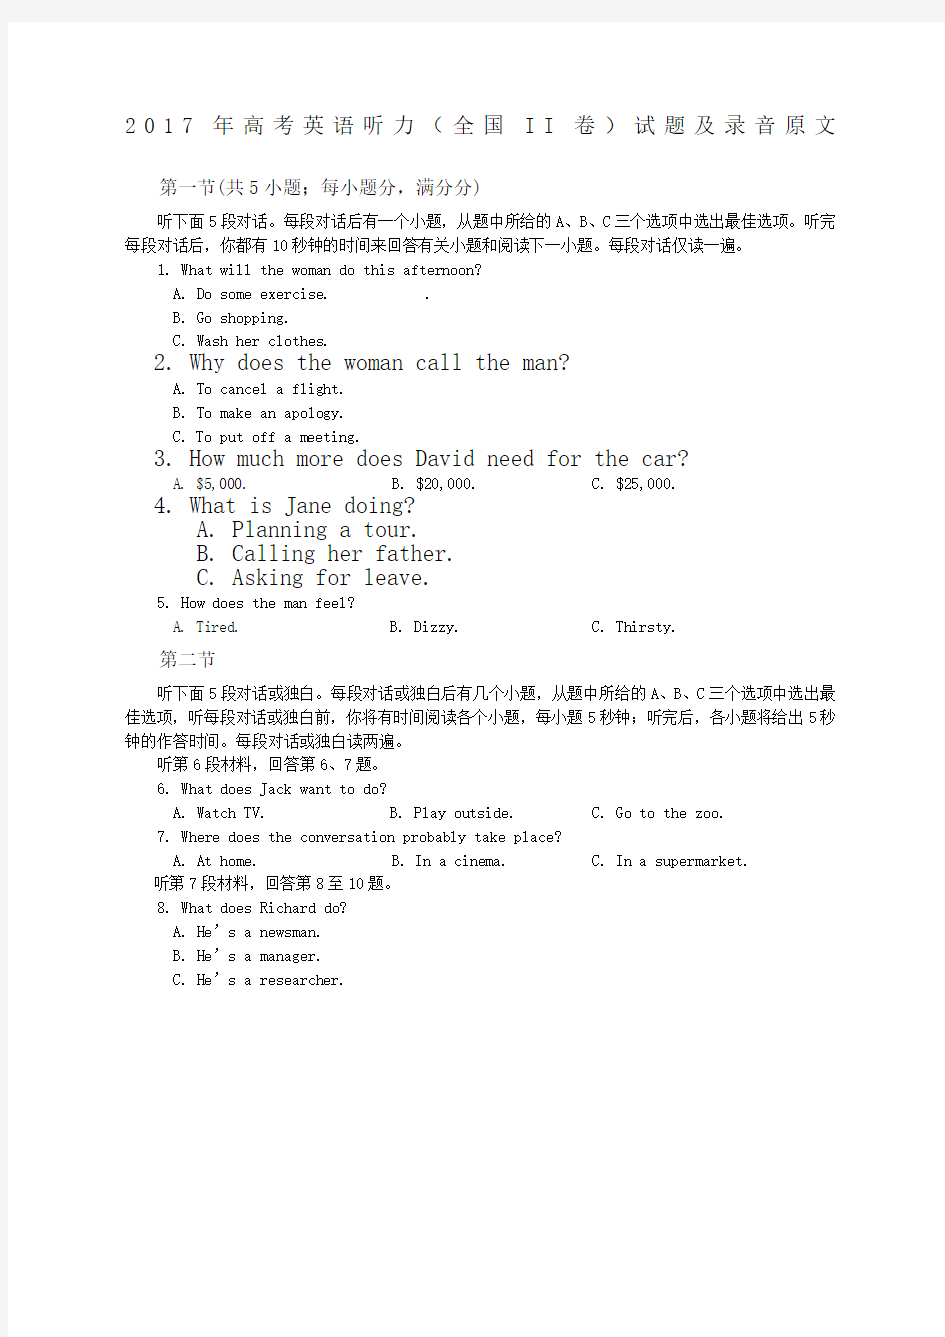 高考英语听力II卷试题及录音原文 (1)